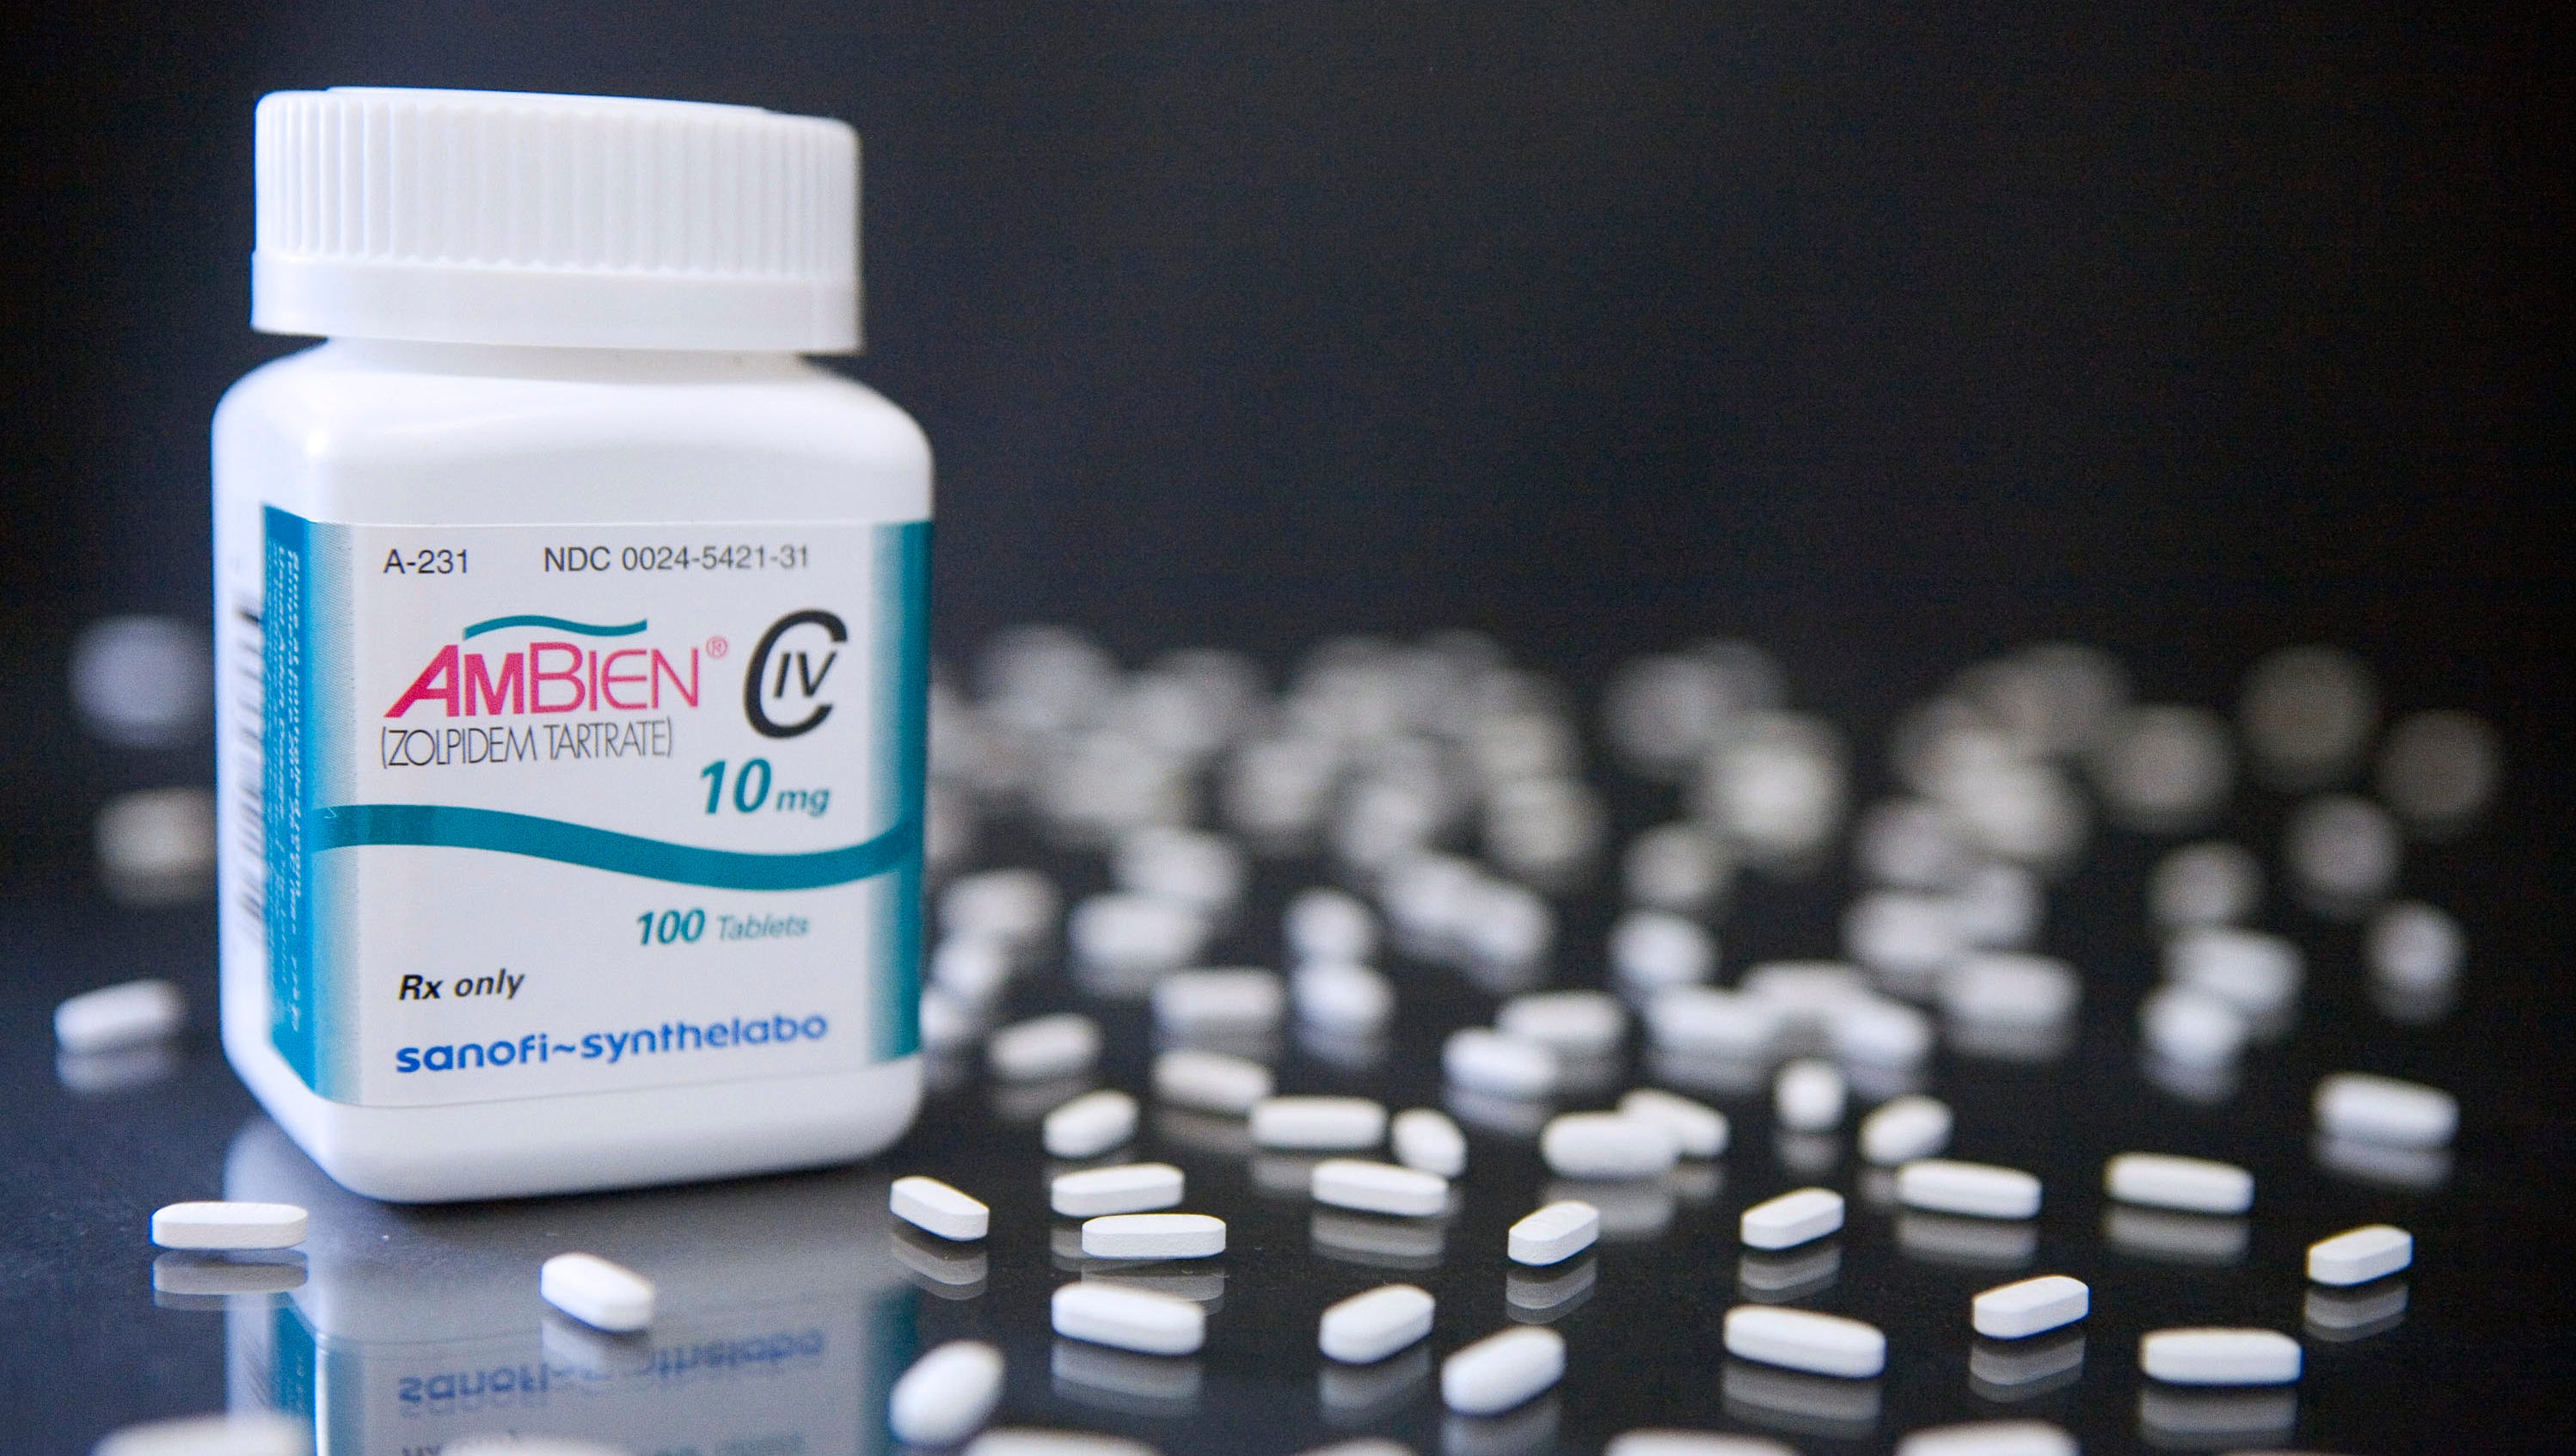 Sleeping pills, like Sonata, Ambien, need new warning labels, FDA says